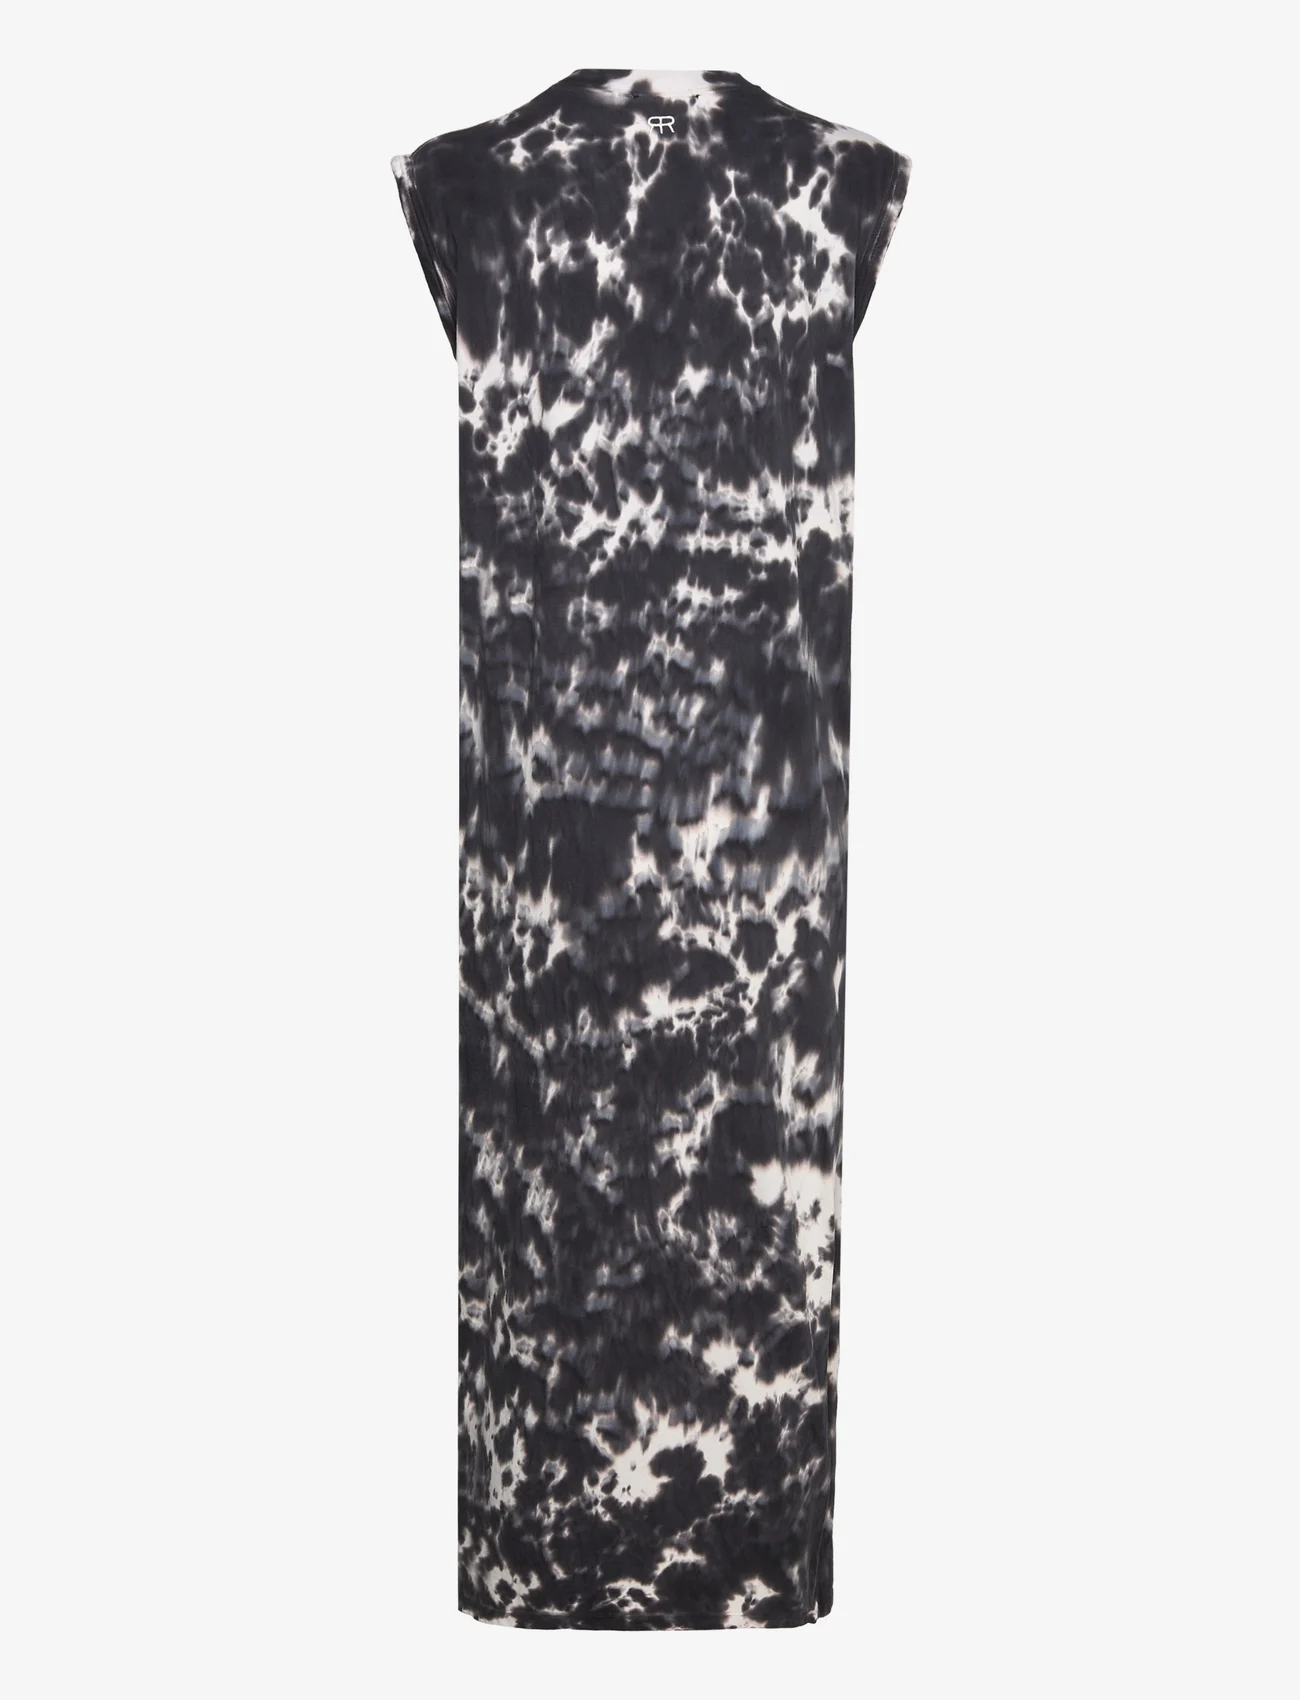 ROSEANNA - DRESS PACIFIC  JERSEY LIPS - t-kreklu kleitas - charcoal - 1